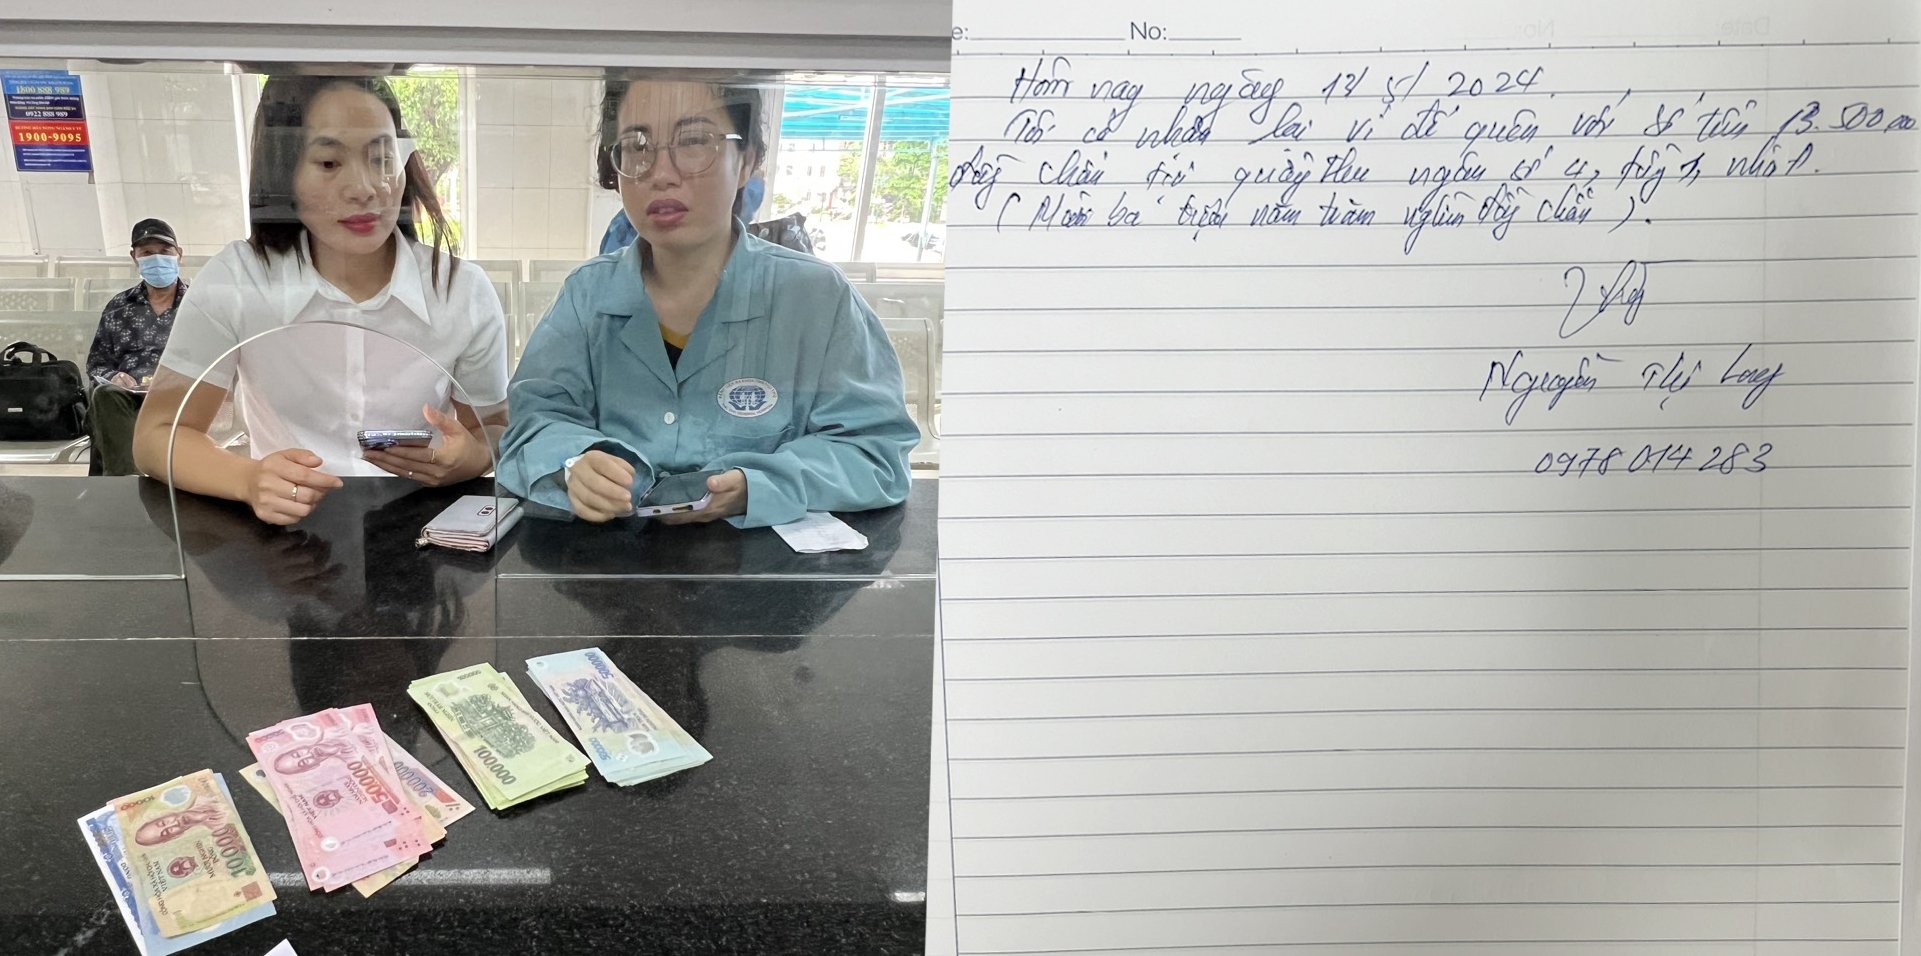 Chị Nguyễn Thị Long nhận lại ví bị mất bên trong có 13,5 triệu đồng tại quầy thu ngân tầng 1 nhà A